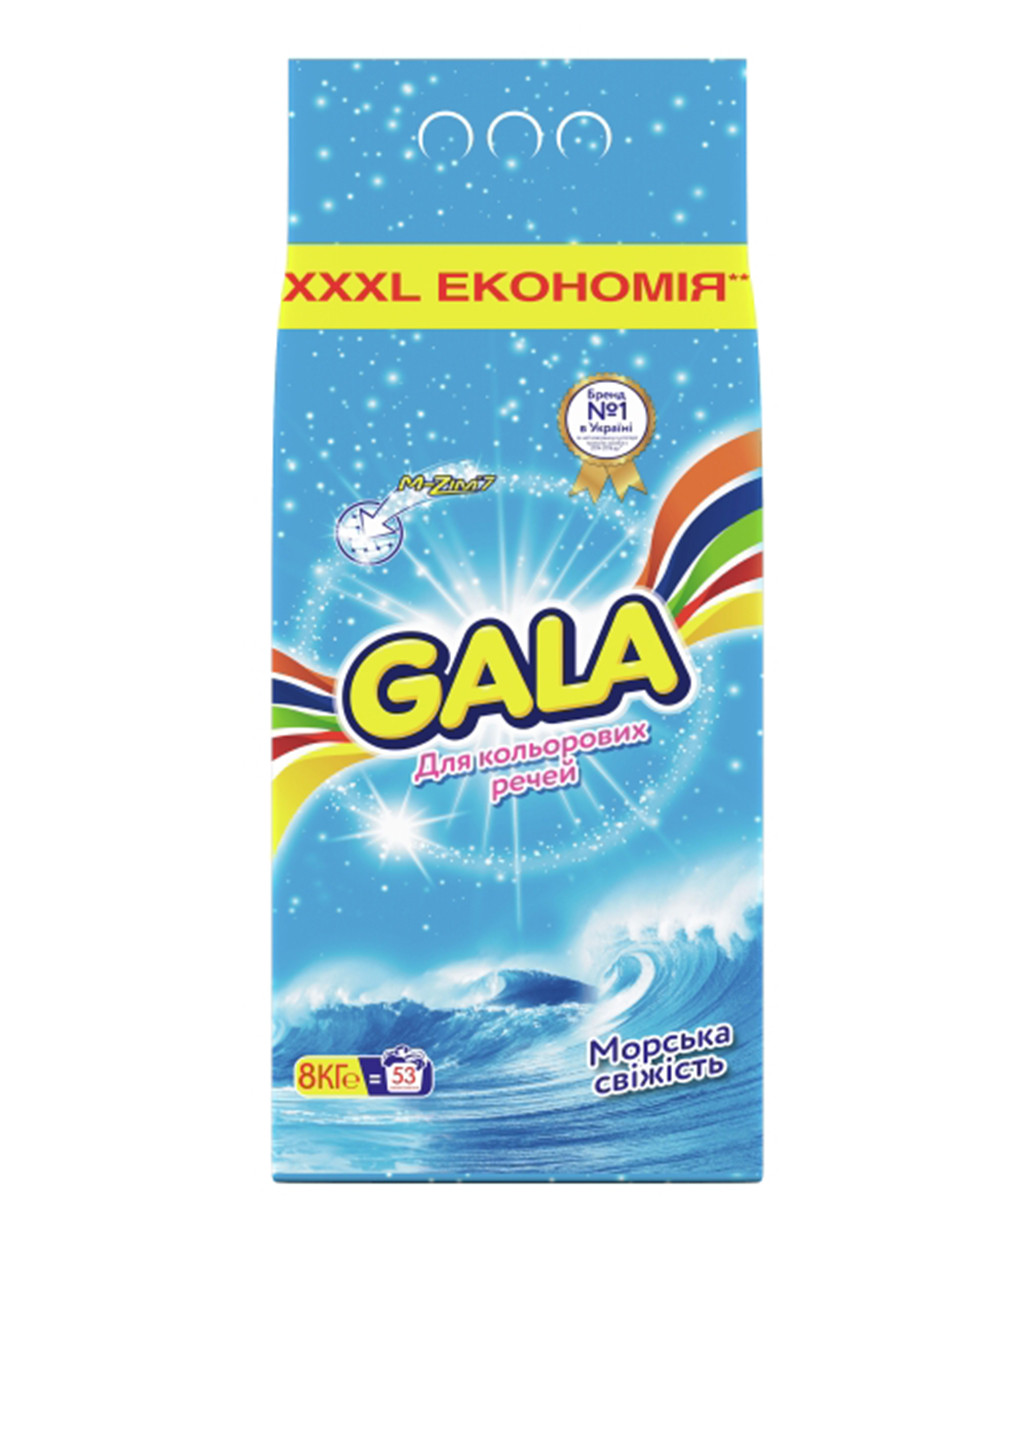 Порошок для цветных тканей Морская свежесть, 8 кг Gala (132543081)